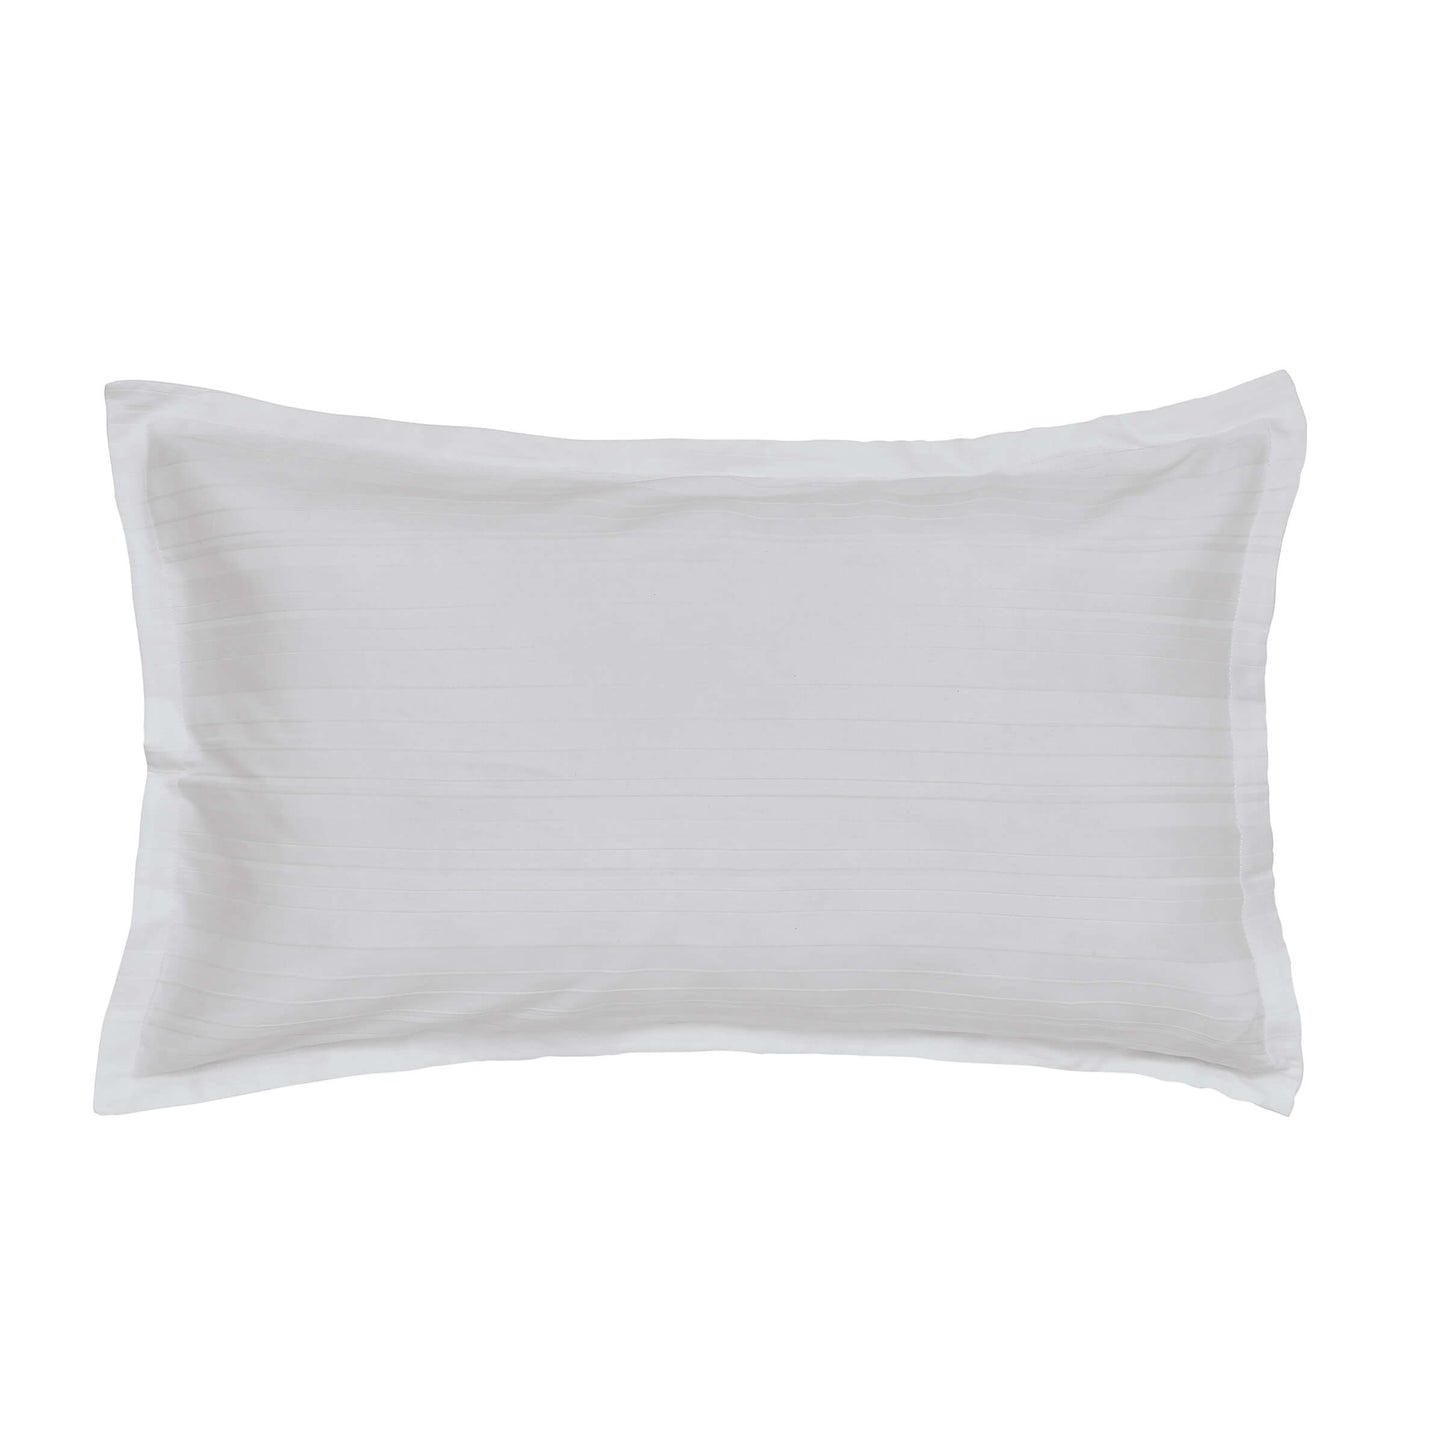 Seren Oxford Pillowcase, White